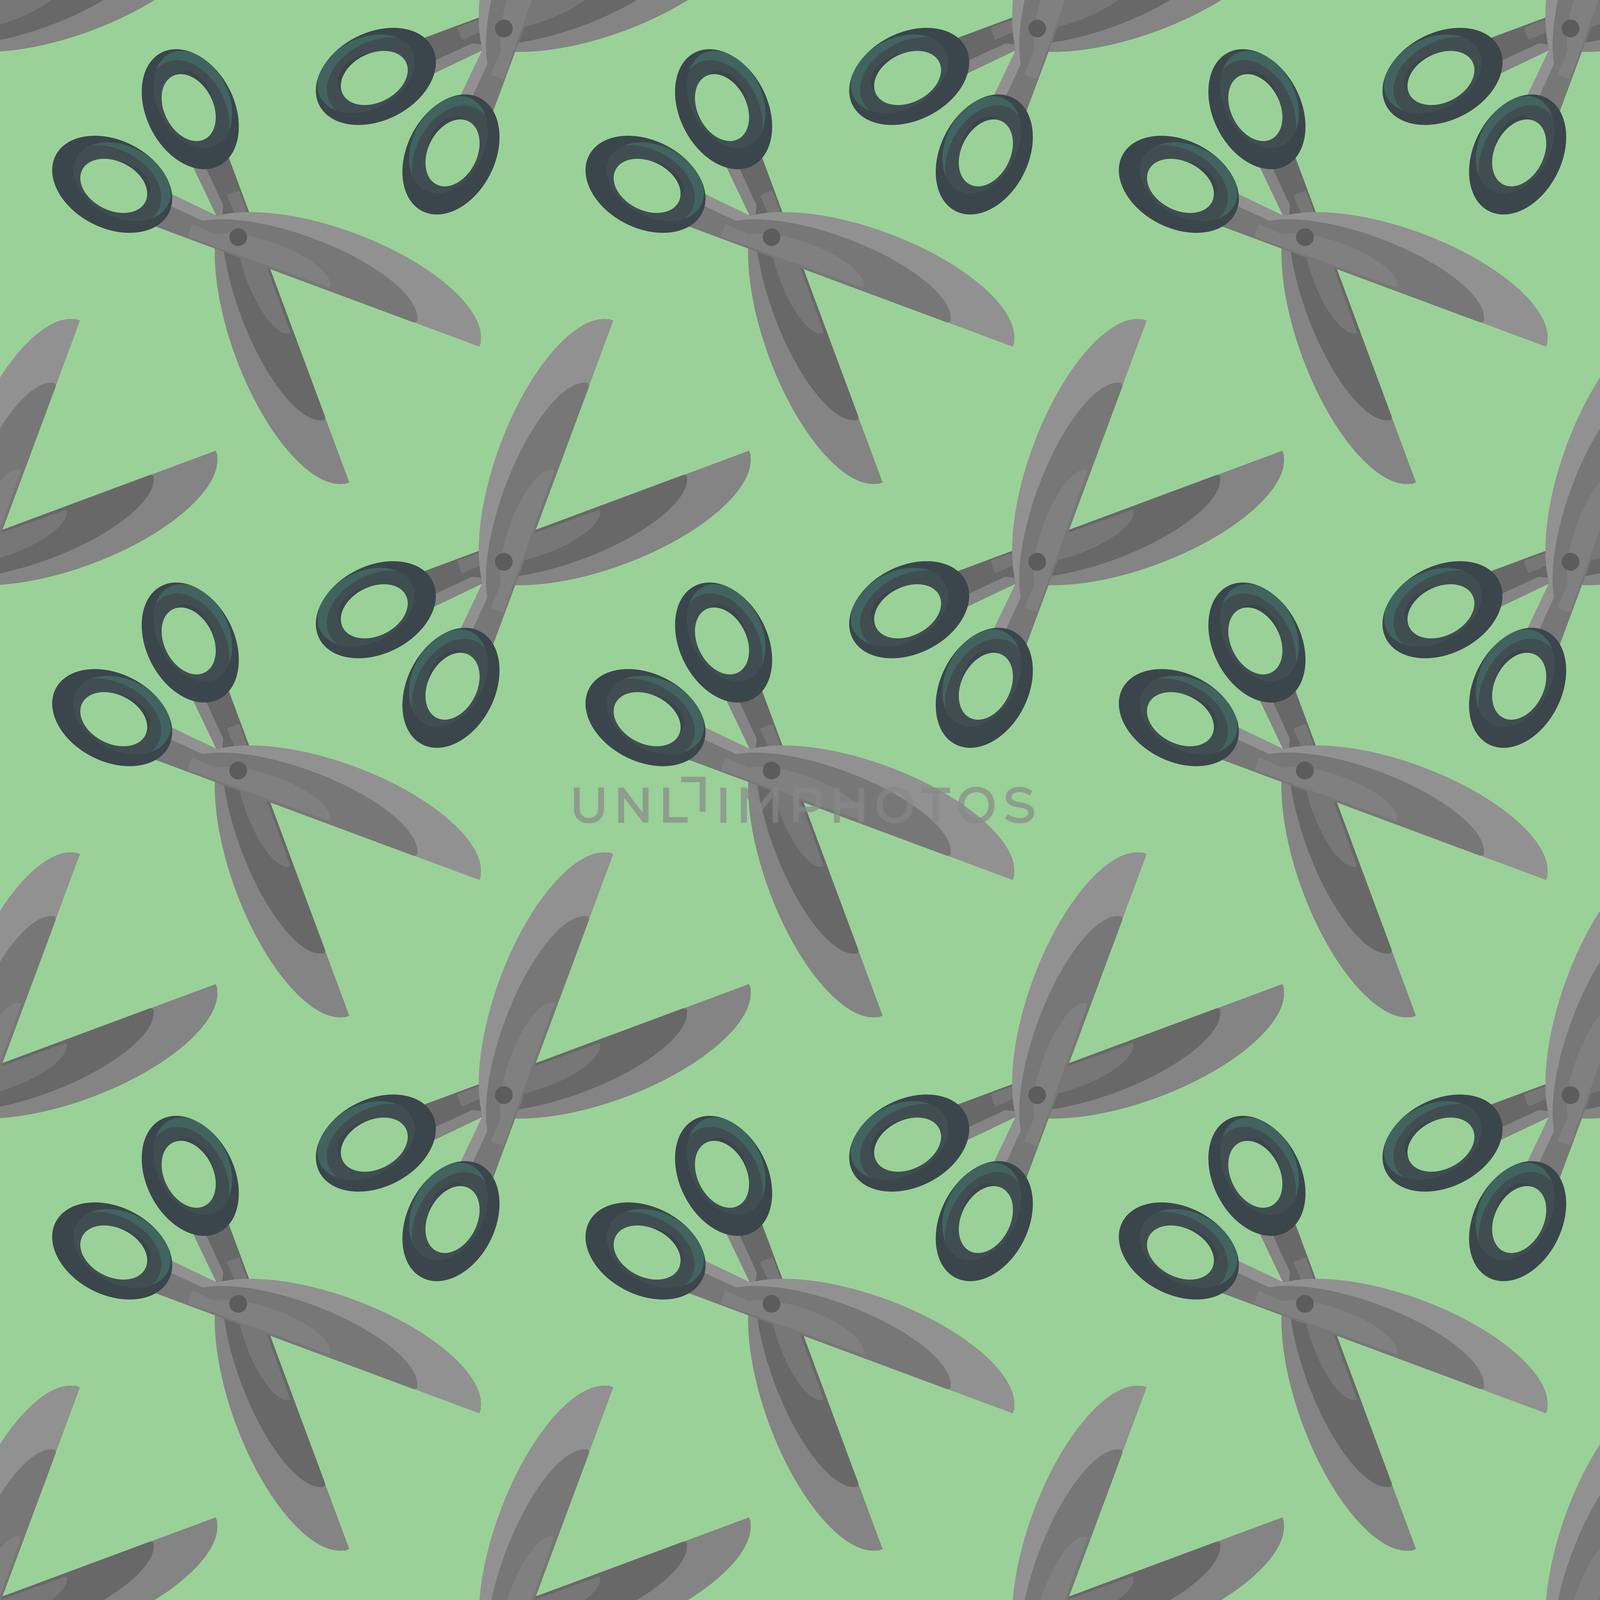 Scissors pattern , illustration, vector on white background by Morphart